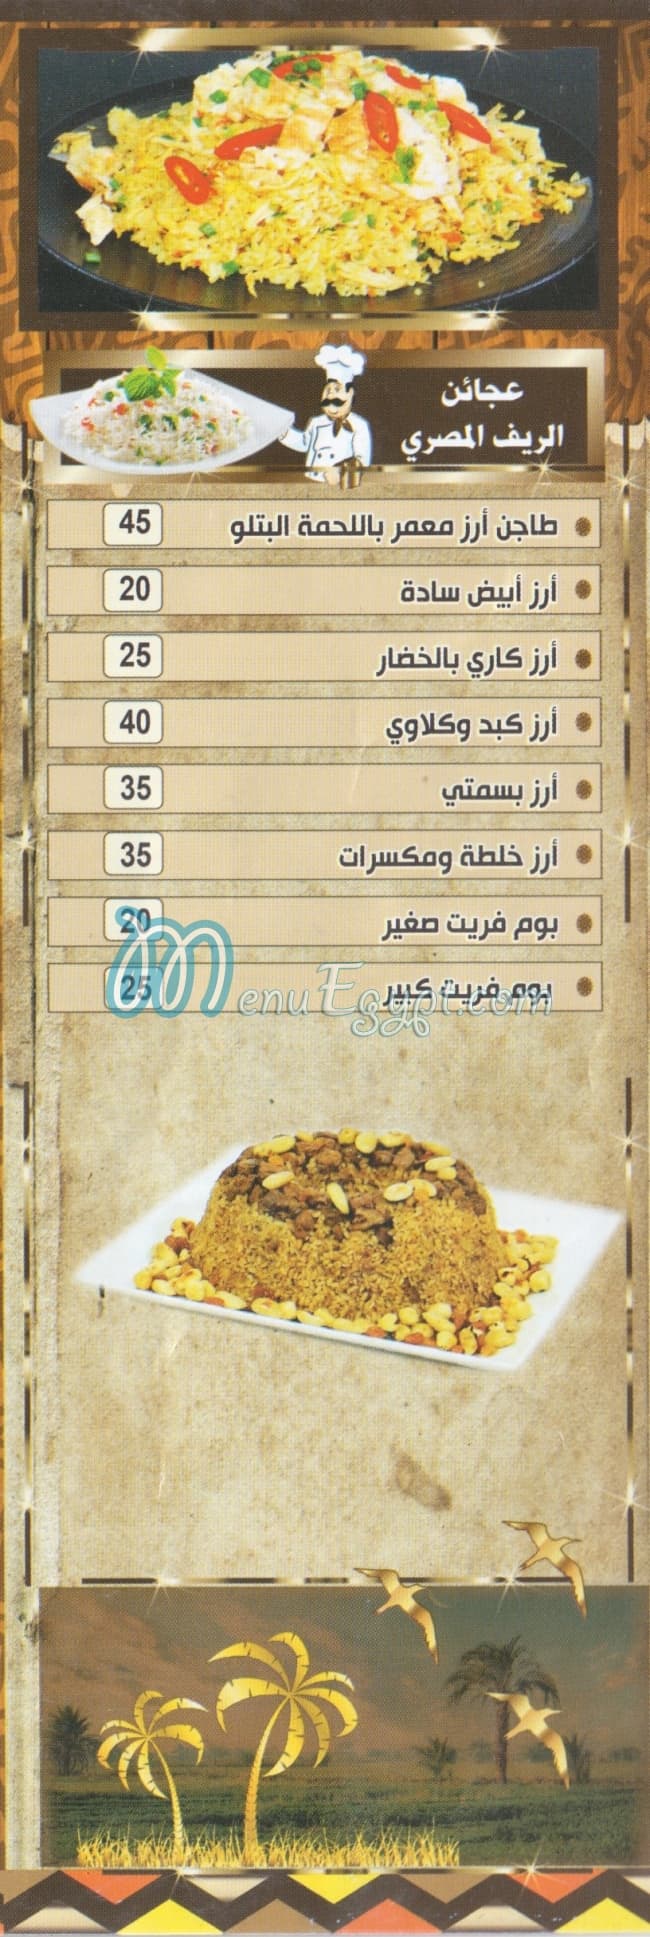 El Ref El Masry menu prices